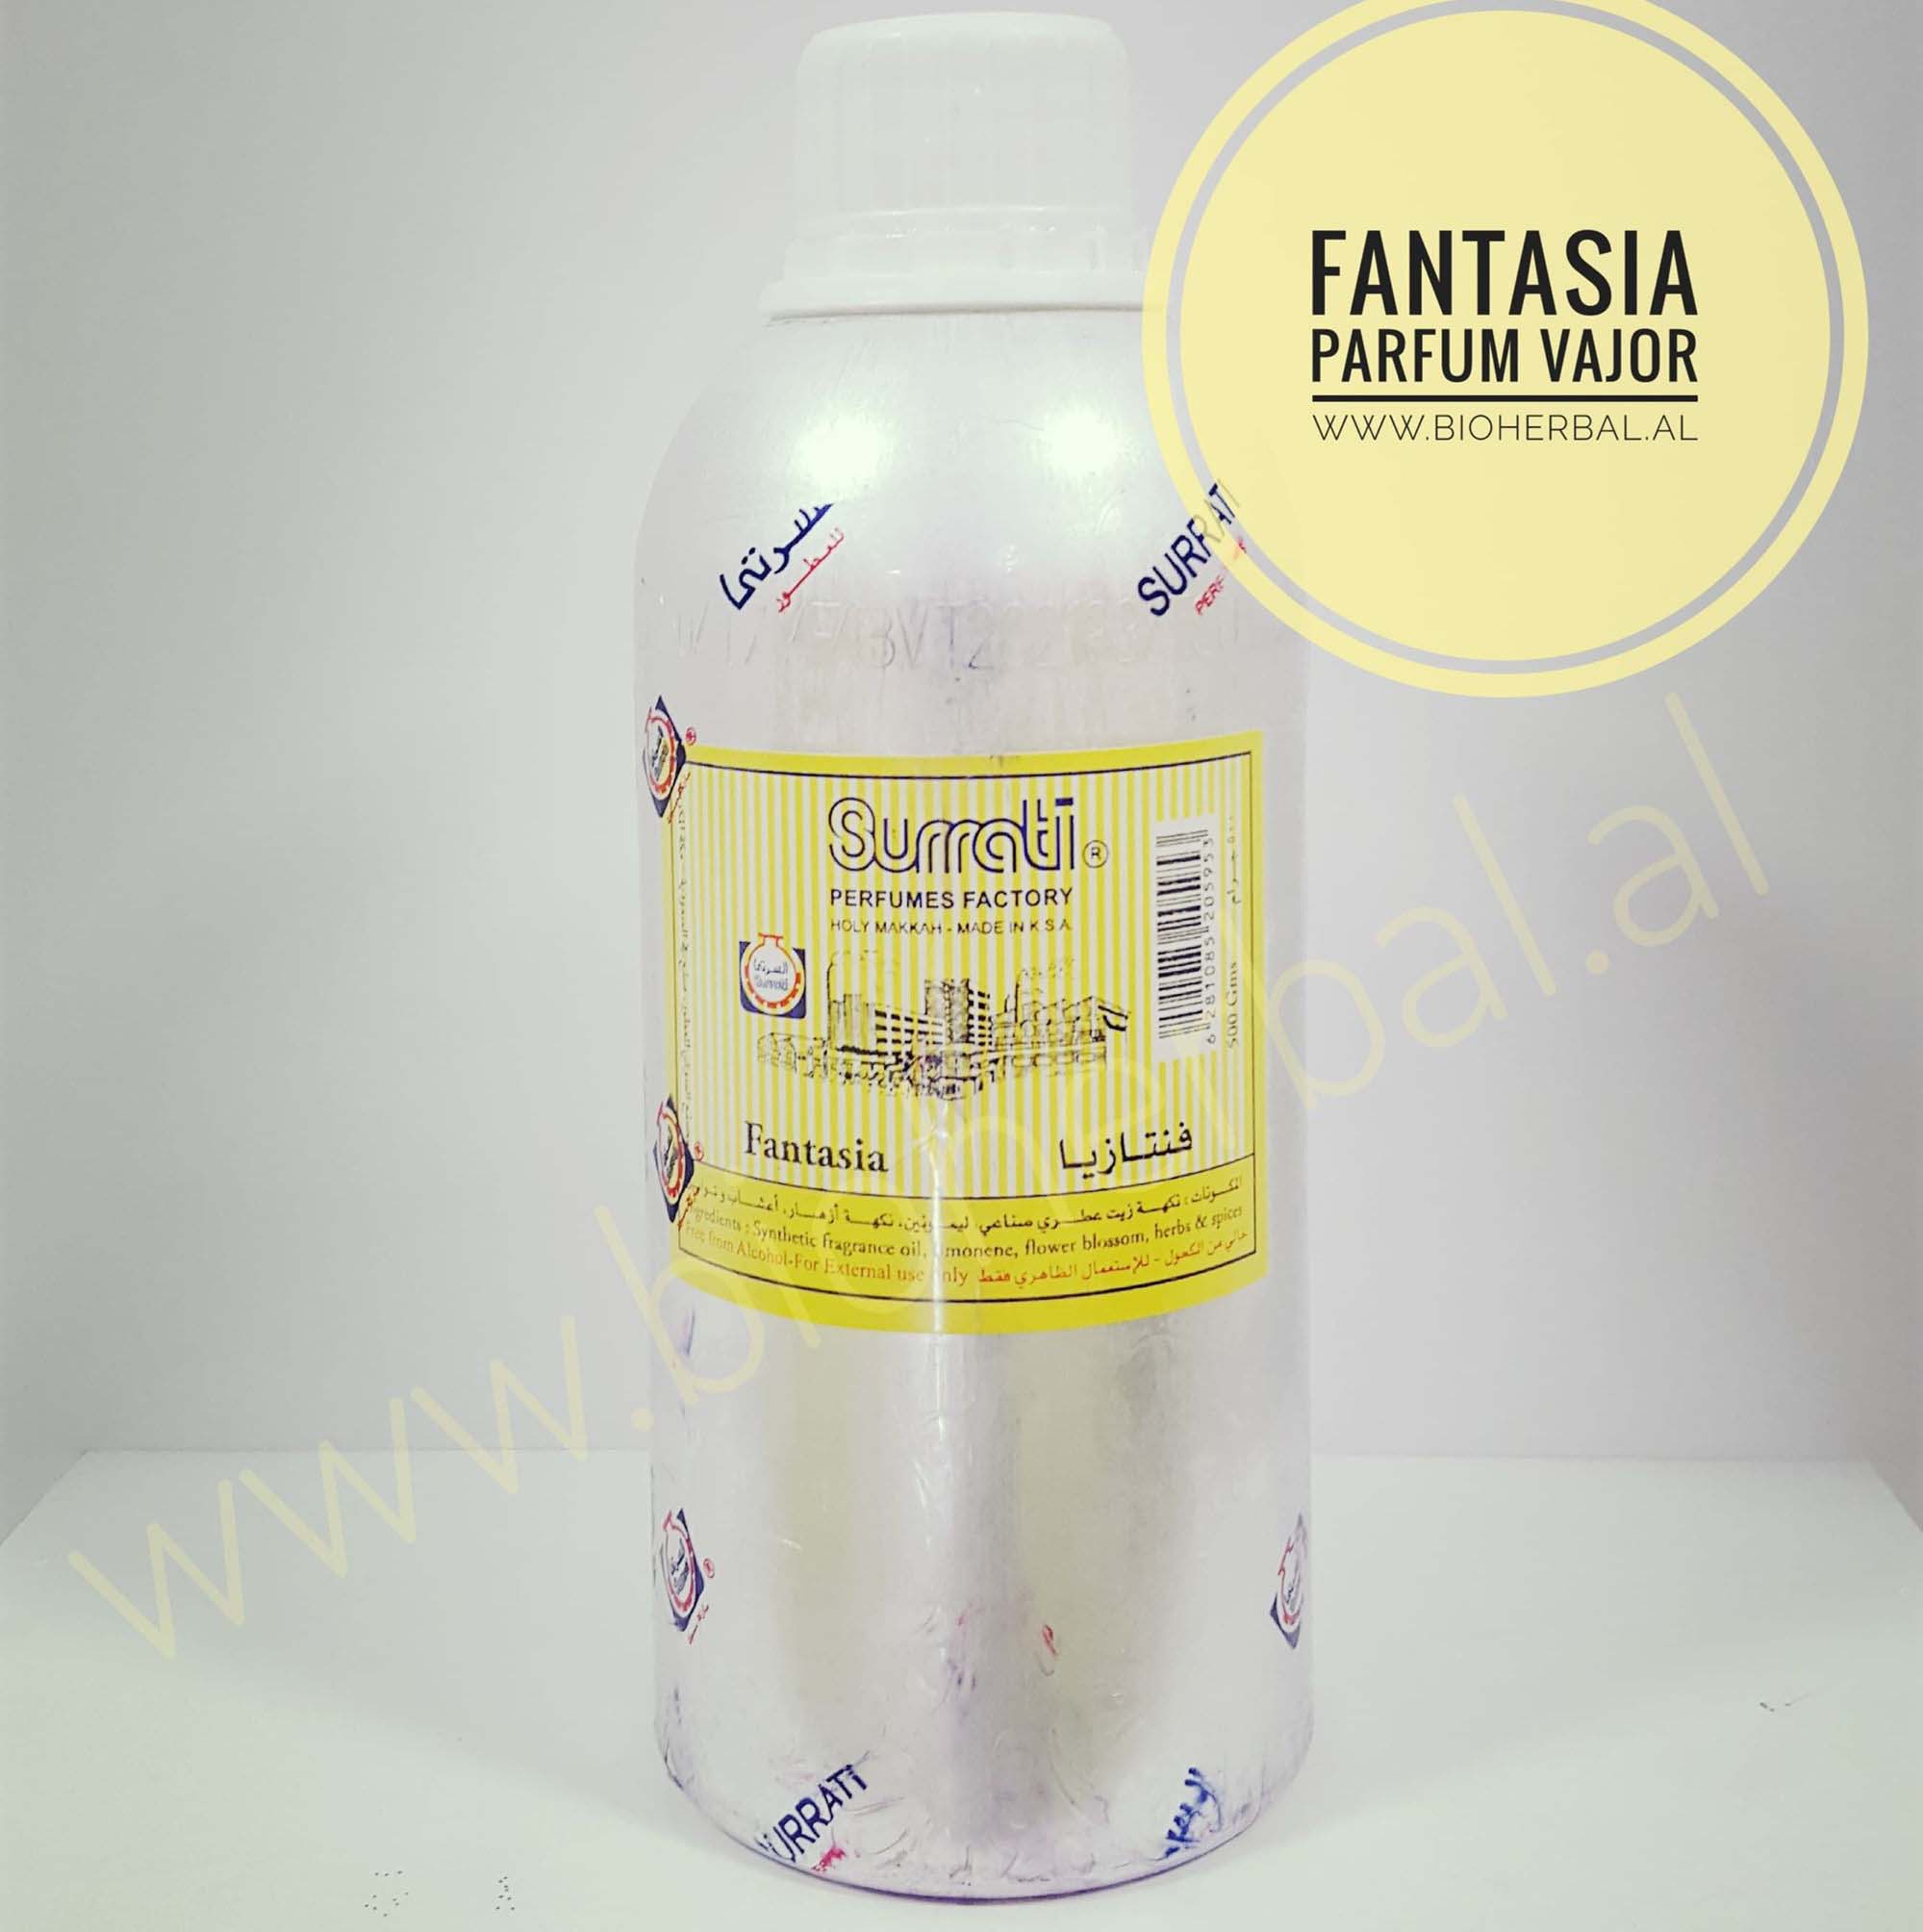 Fantasia (Parfum Vajor)